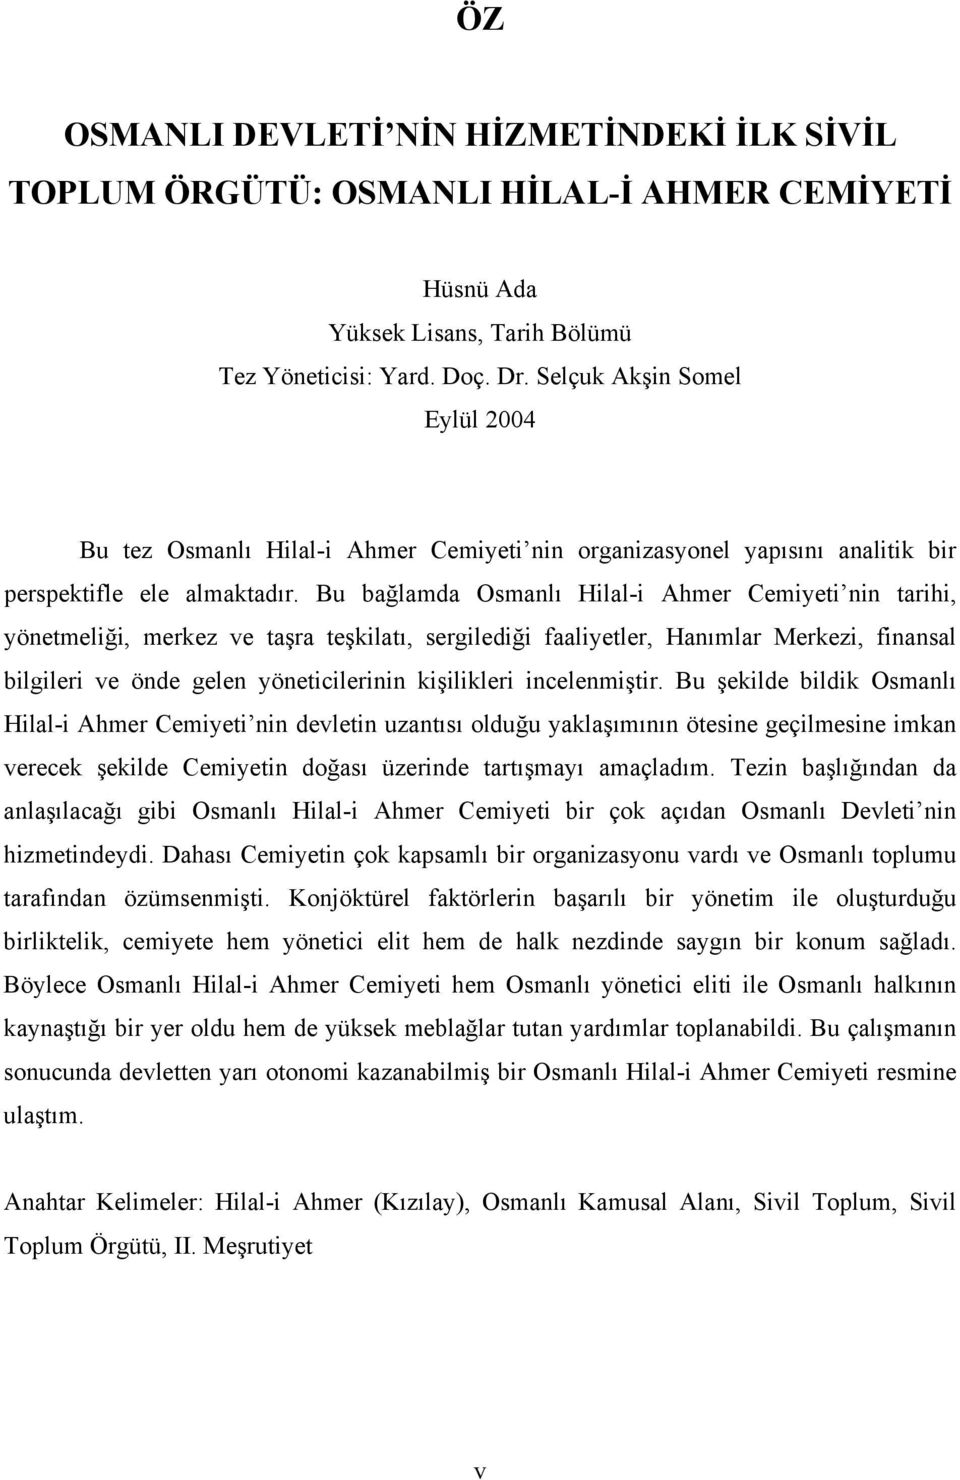 Bu bağlamda Osmanlı Hilal-i Ahmer Cemiyeti nin tarihi, yönetmeliği, merkez ve taşra teşkilatı, sergilediği faaliyetler, Hanımlar Merkezi, finansal bilgileri ve önde gelen yöneticilerinin kişilikleri